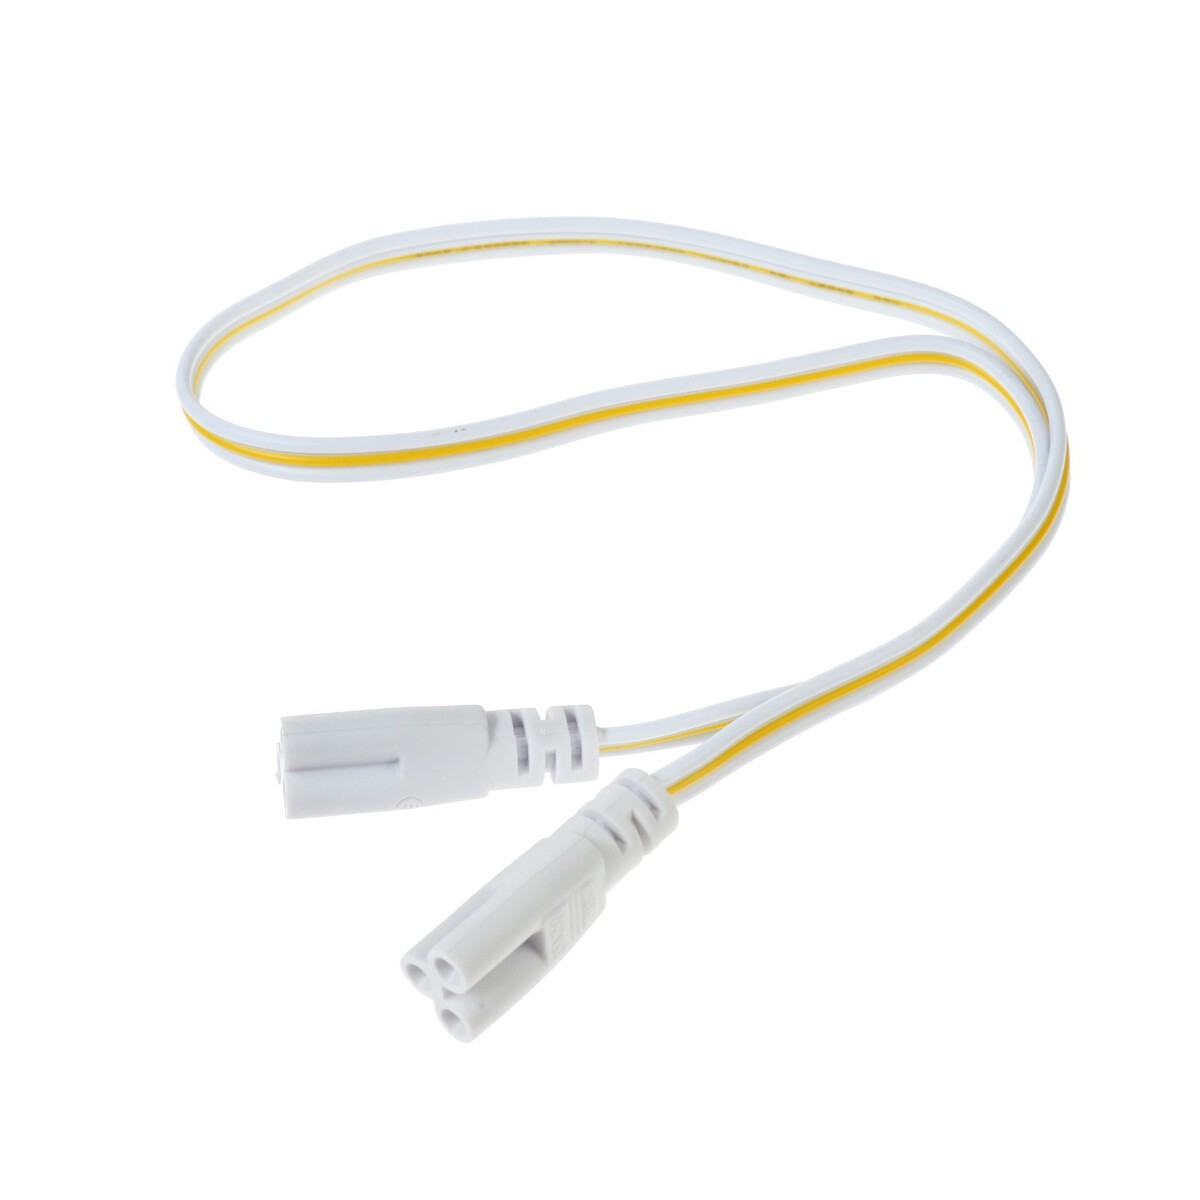 Провод соединительный для светильников, разъем l/n/g, 50 см, белый геймпад для dendy 8 bit 9pin узкий разъем